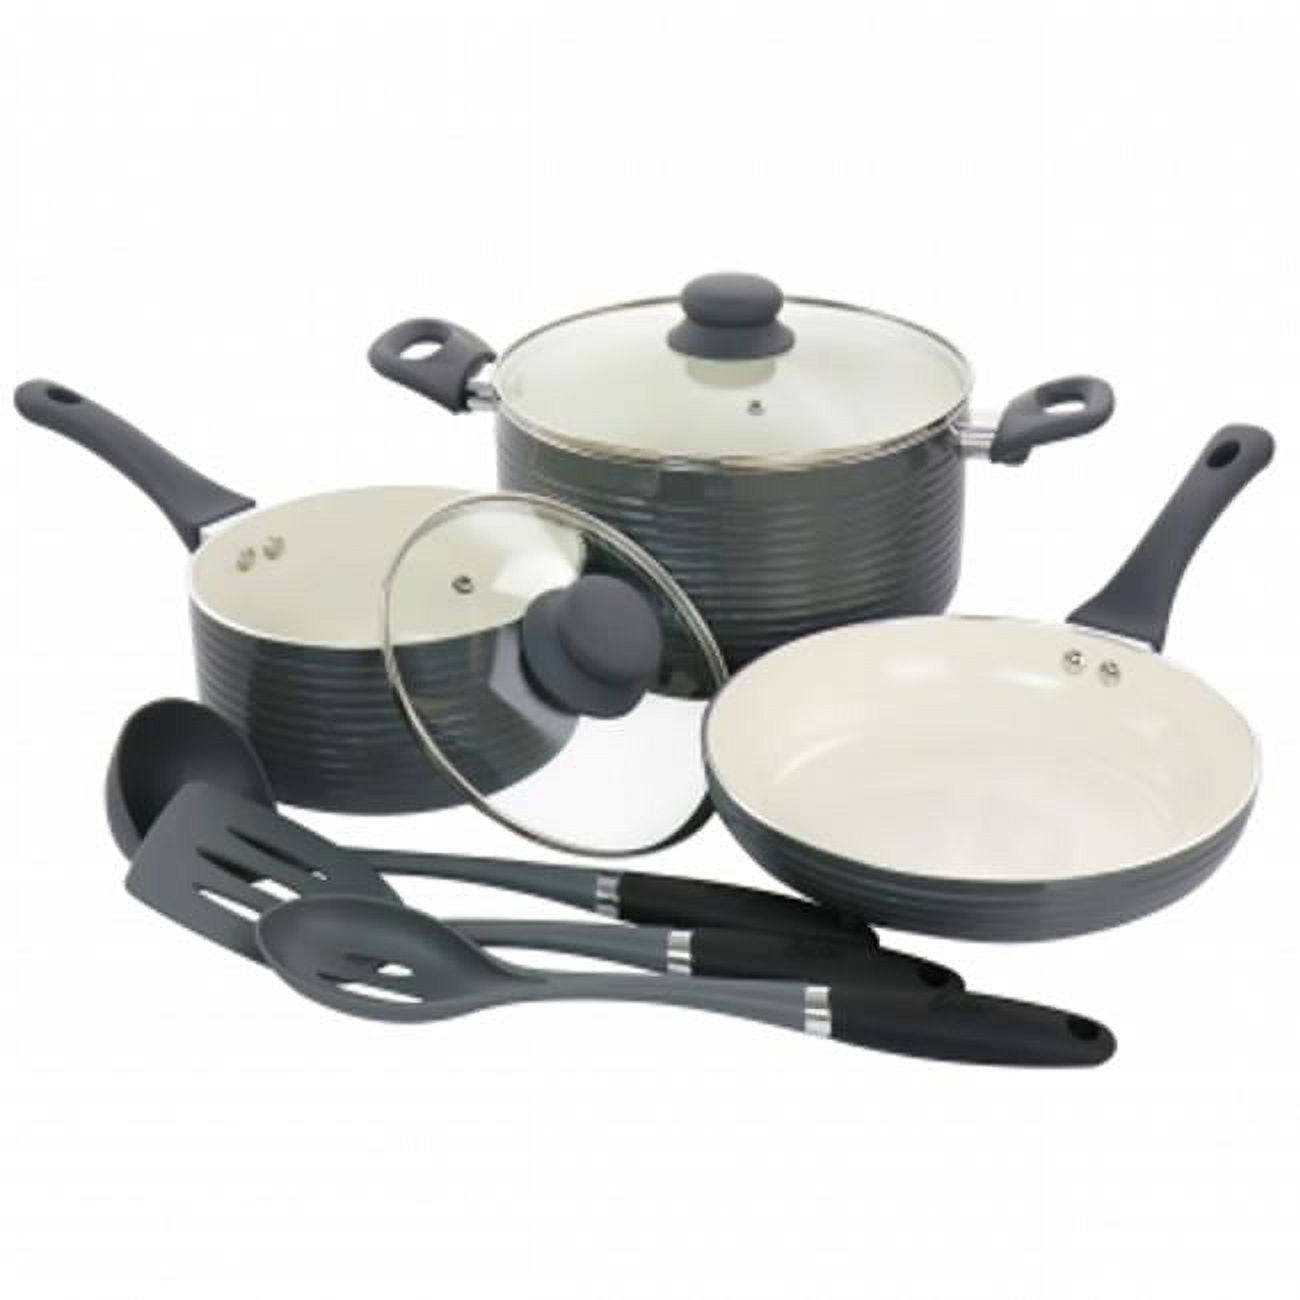 Smith Barton 28 - Piece Non-Stick Aluminum Cookware Set